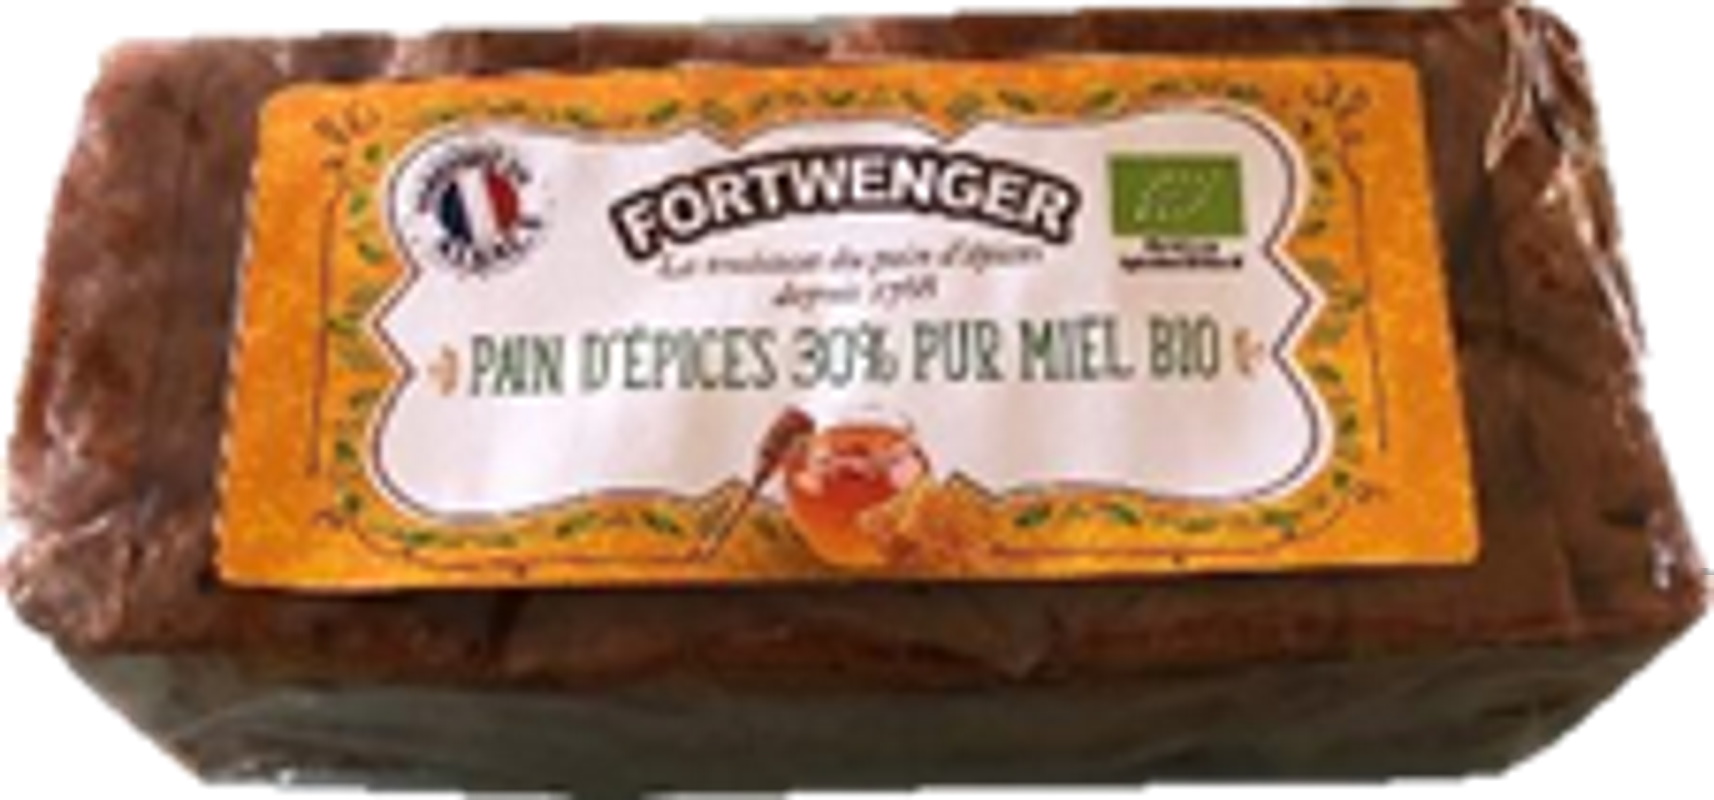 Pain d'épices 30% pur miel BIO C970MG-Fortwenger-lalsace-en-bouteille.com-Gertwiller